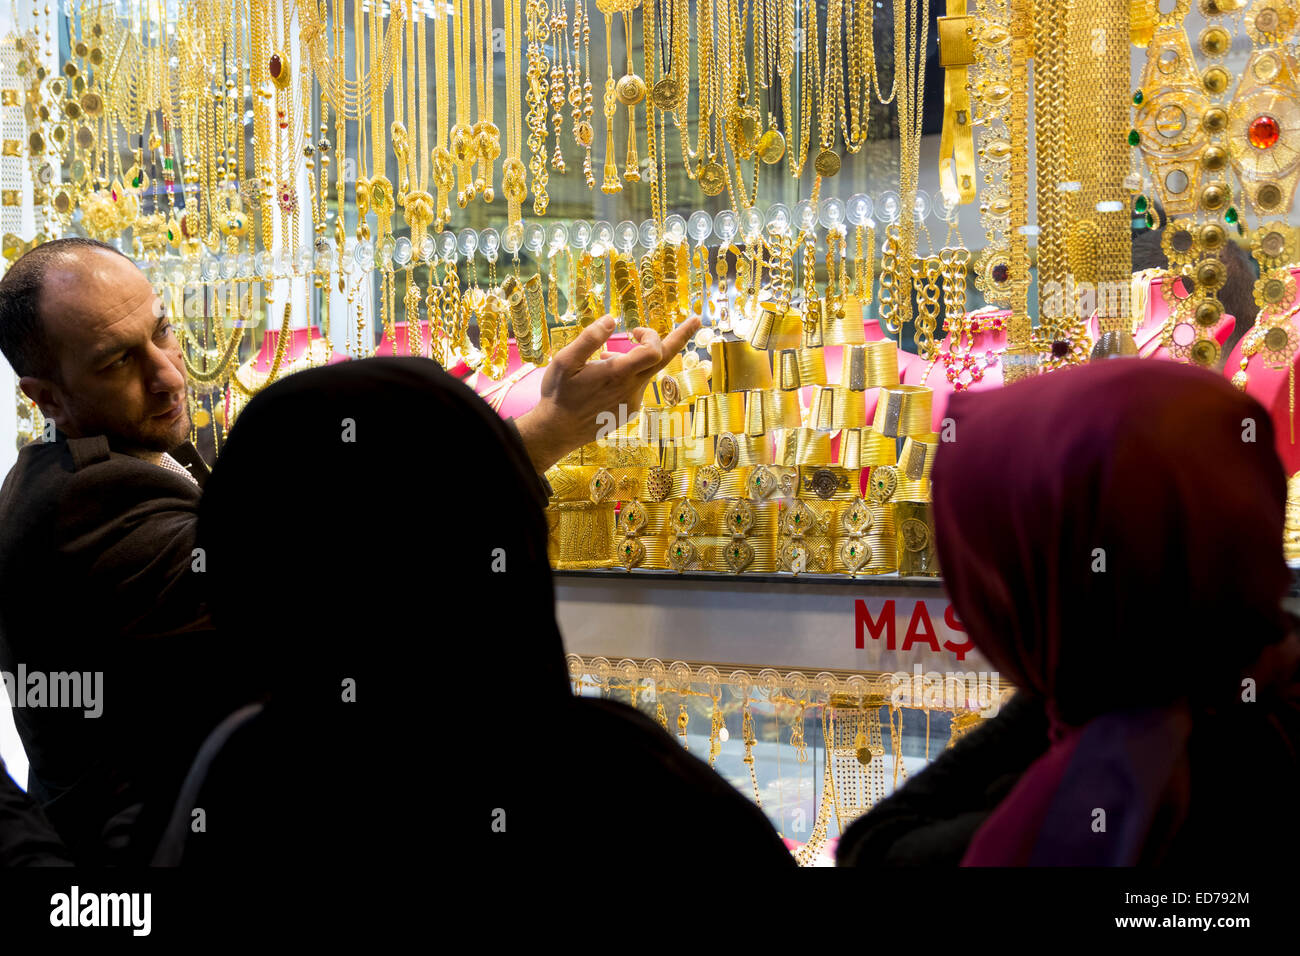 Les femmes musulmanes au magasin de bijoux dans le Grand Bazar, le grand marché, Kapalicarsi en Beyazi, Istanbul, Turquie Banque D'Images